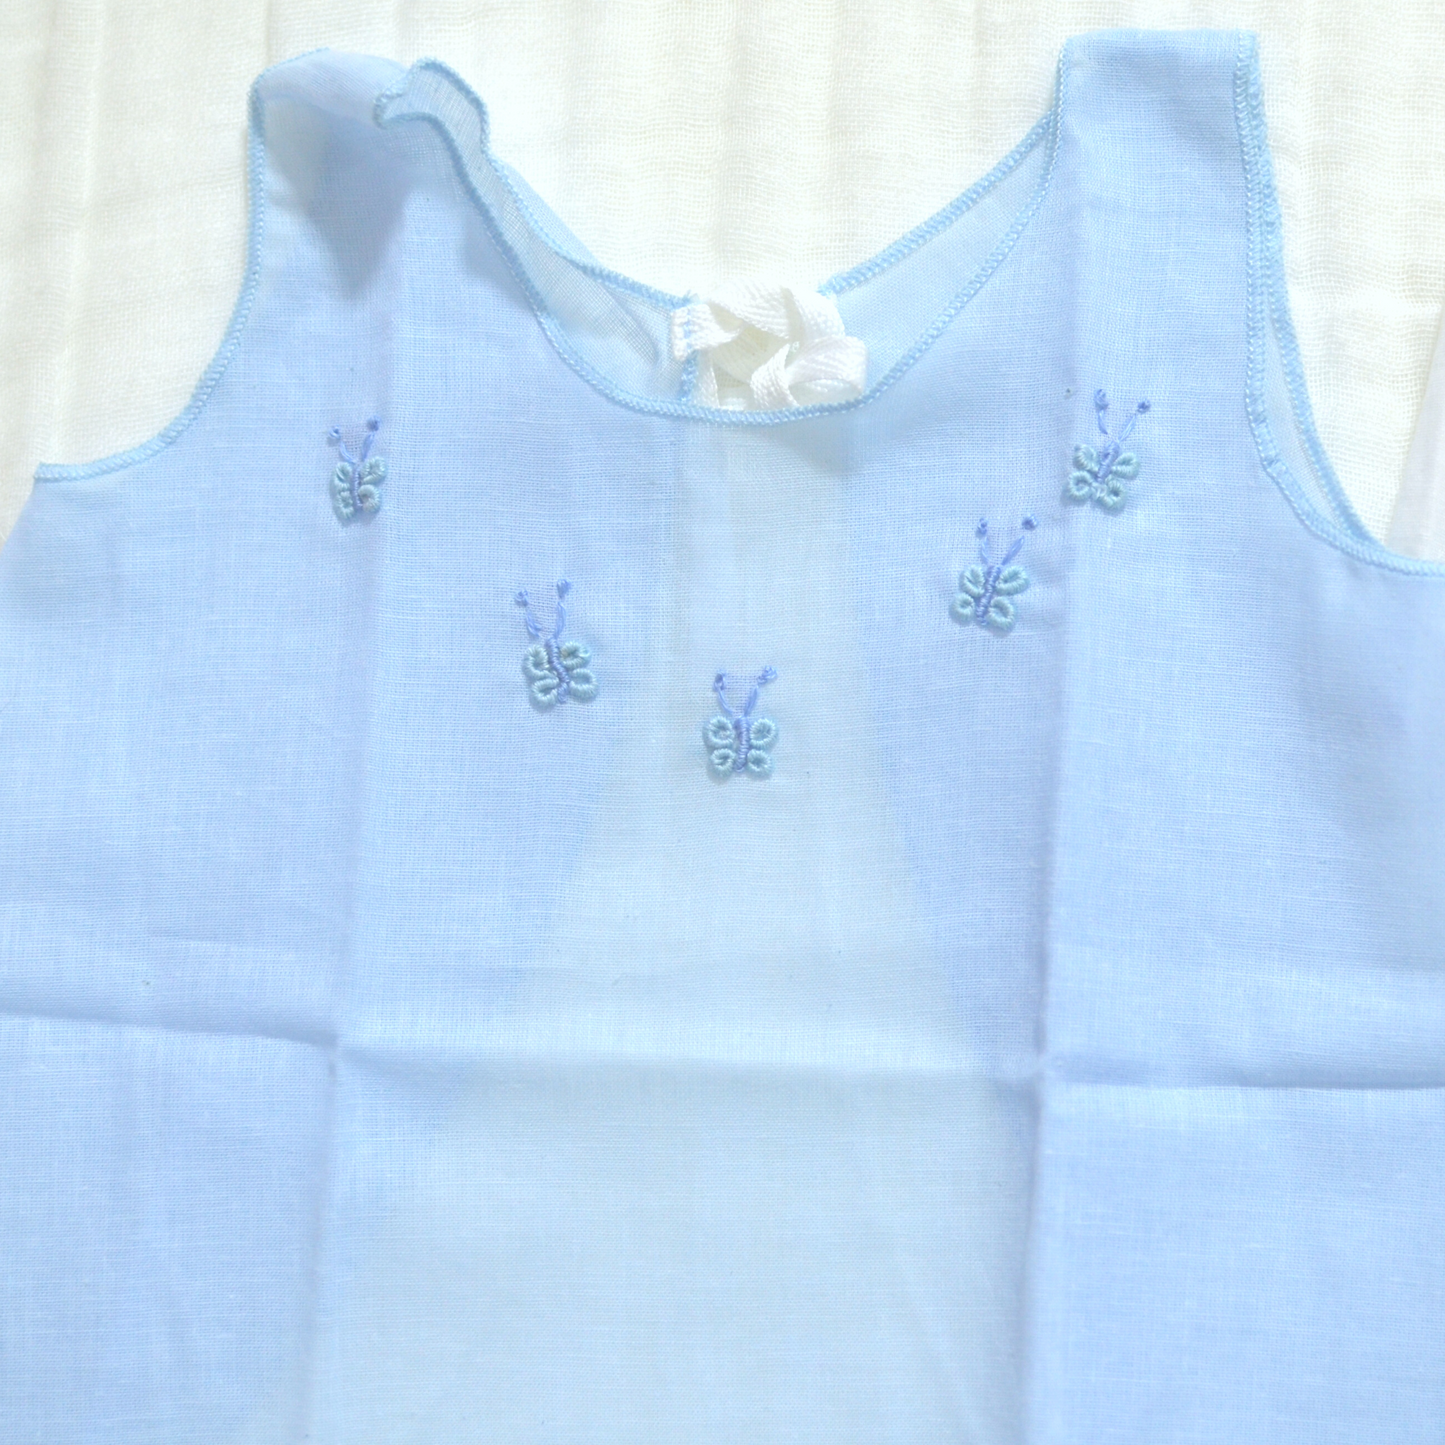 Handmade Newborn Dress Collection - Muslin V